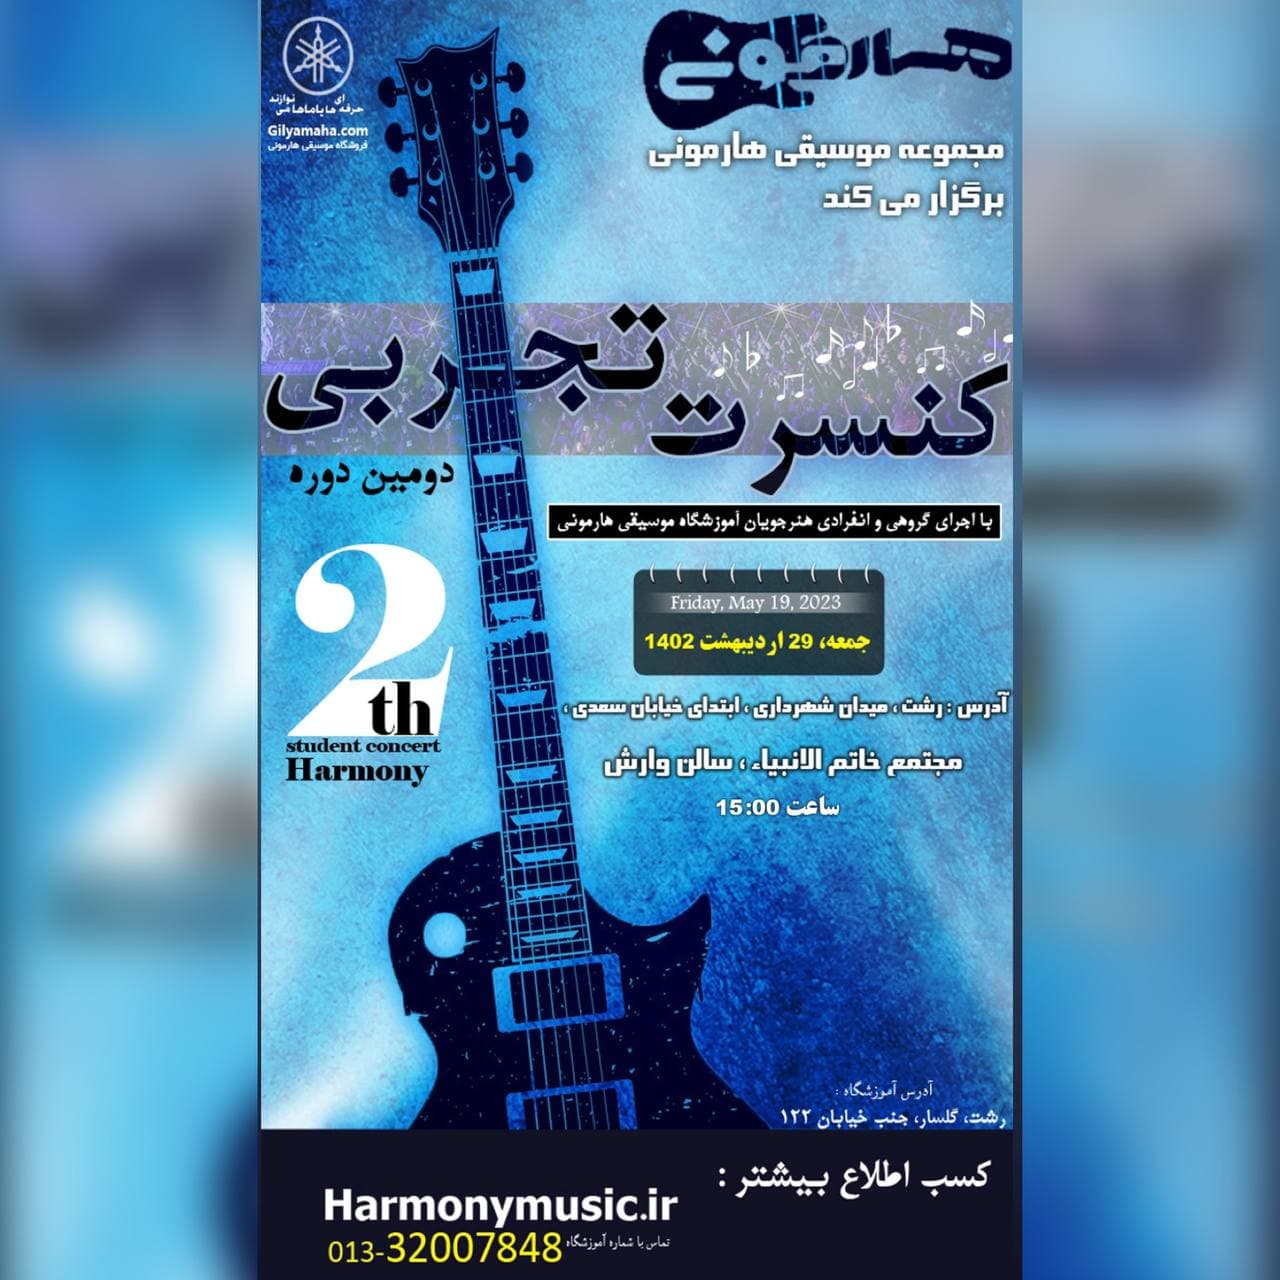 دومین دوره کنسرت تجربی آموزشگاه موسیقی هارمونی رشت برگزار میشود